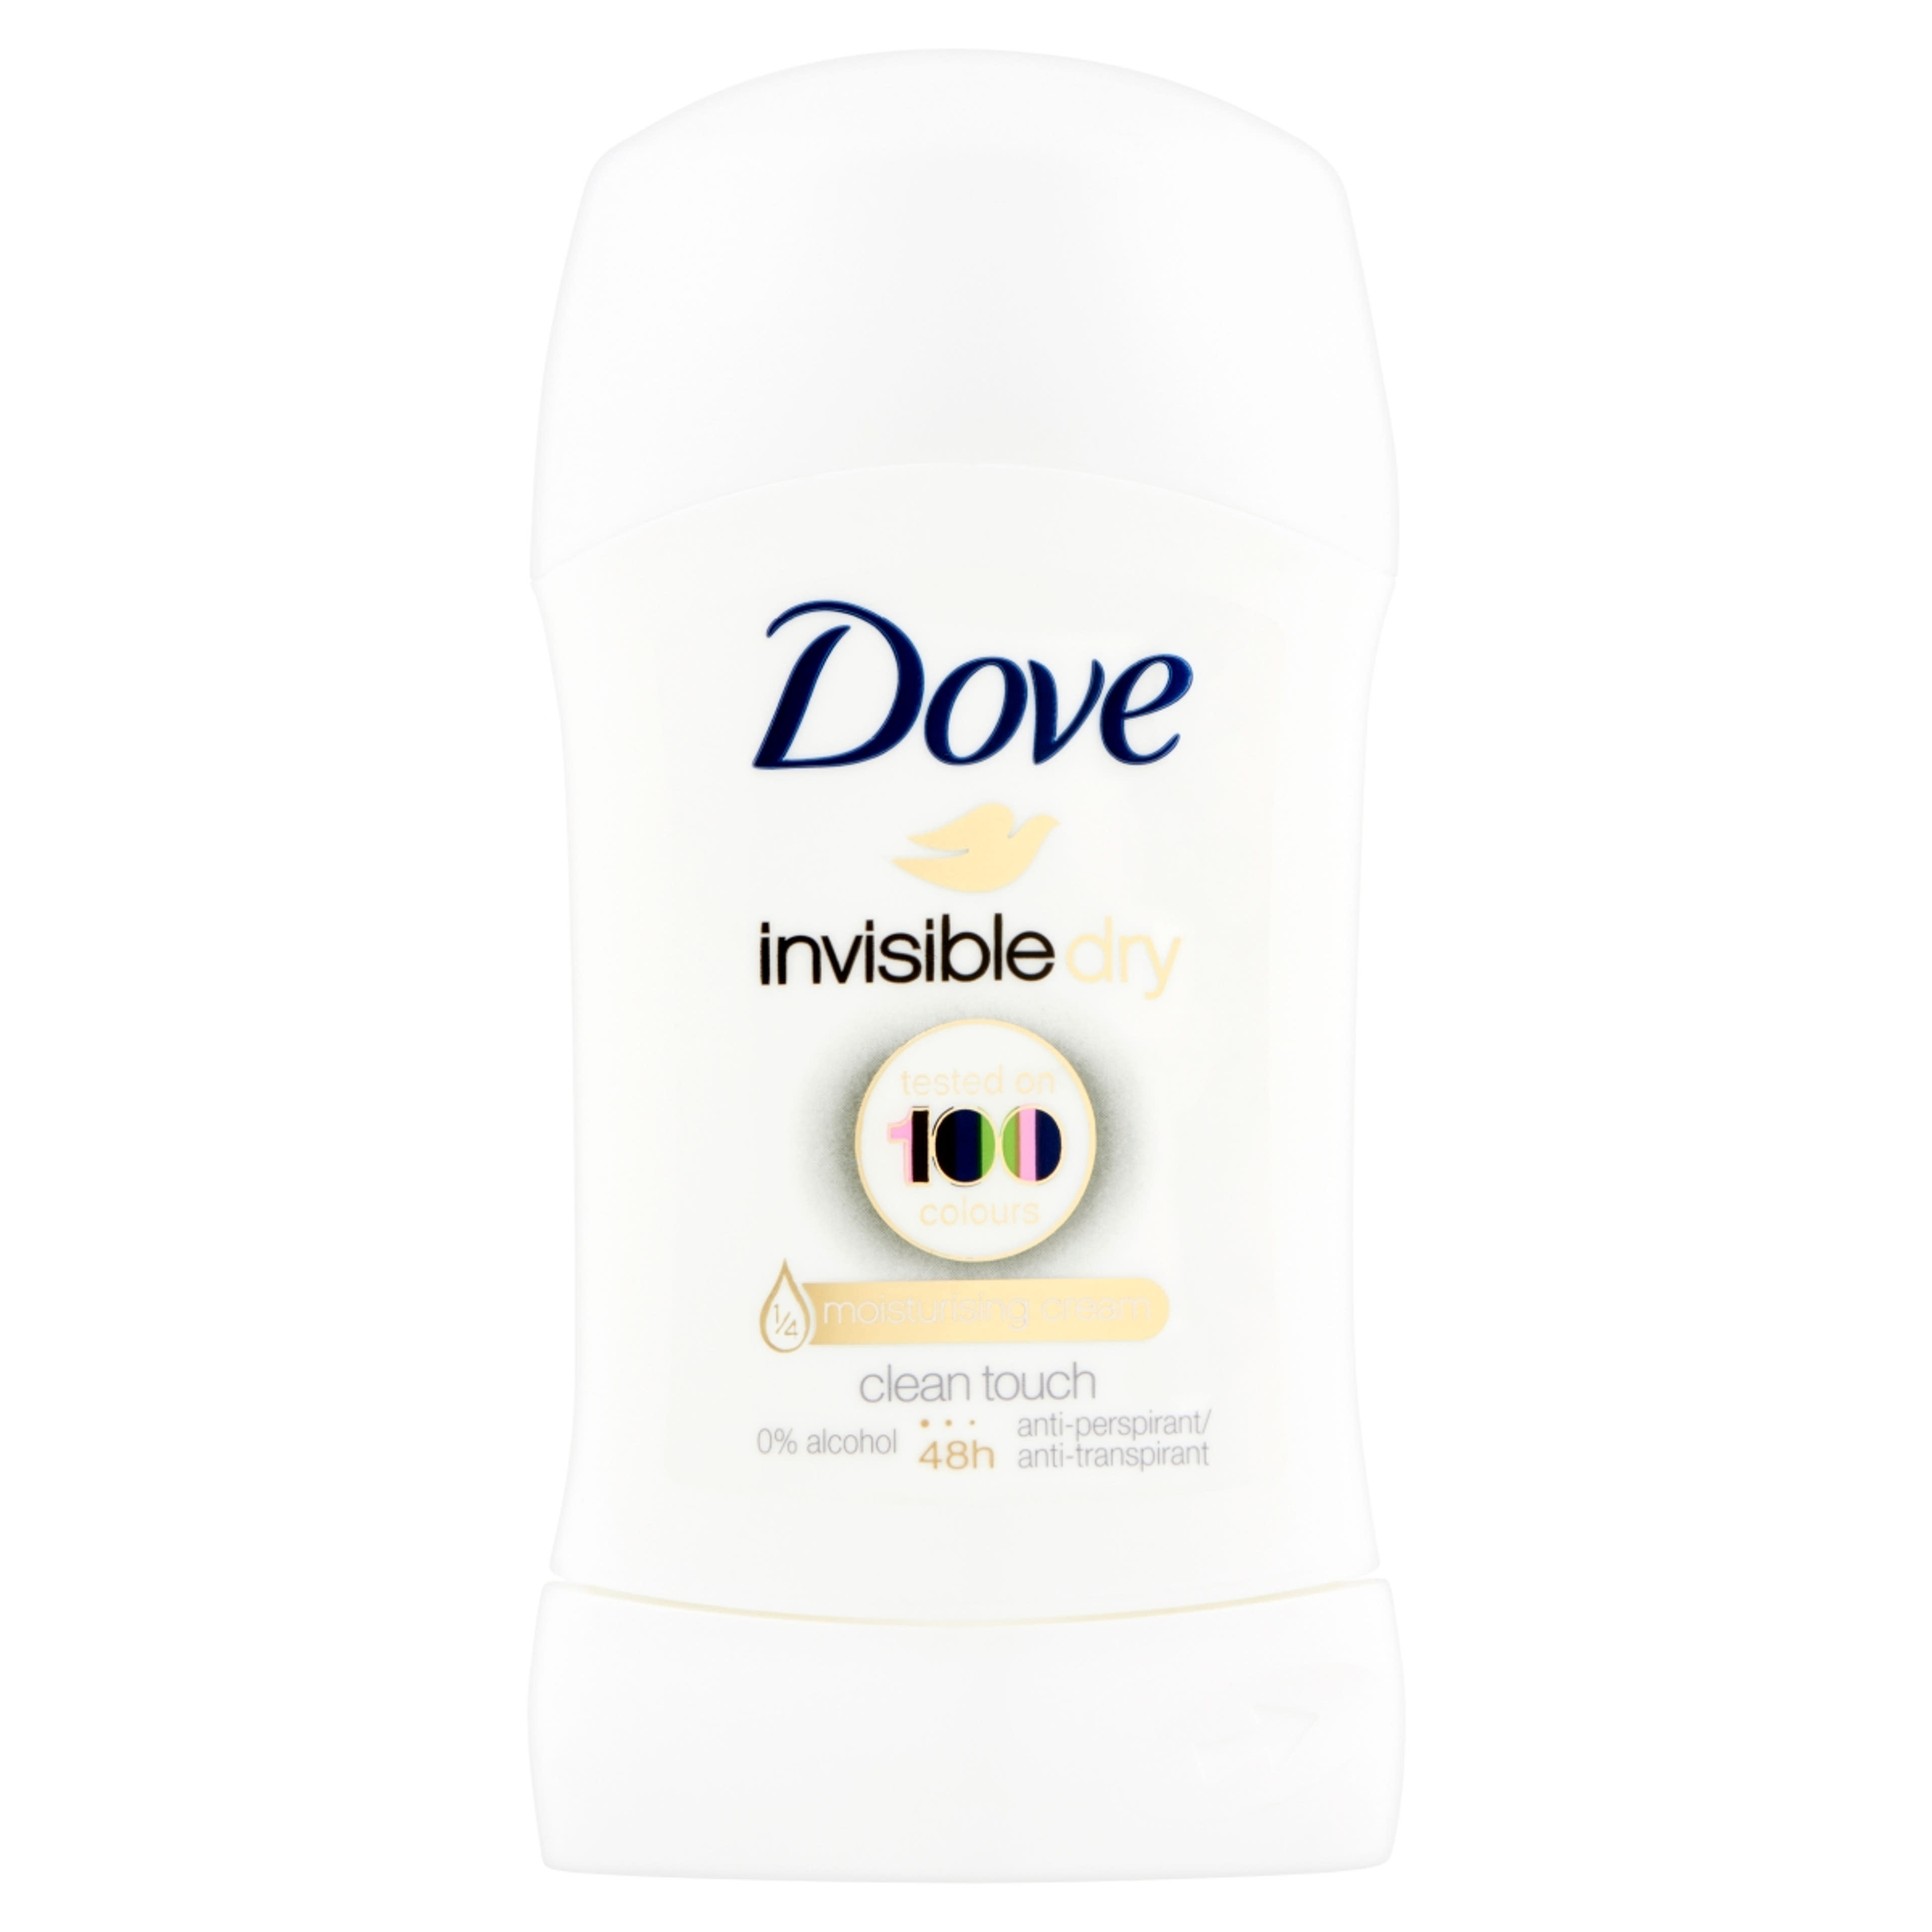 Dove Invisible Dry stift - 40 ml